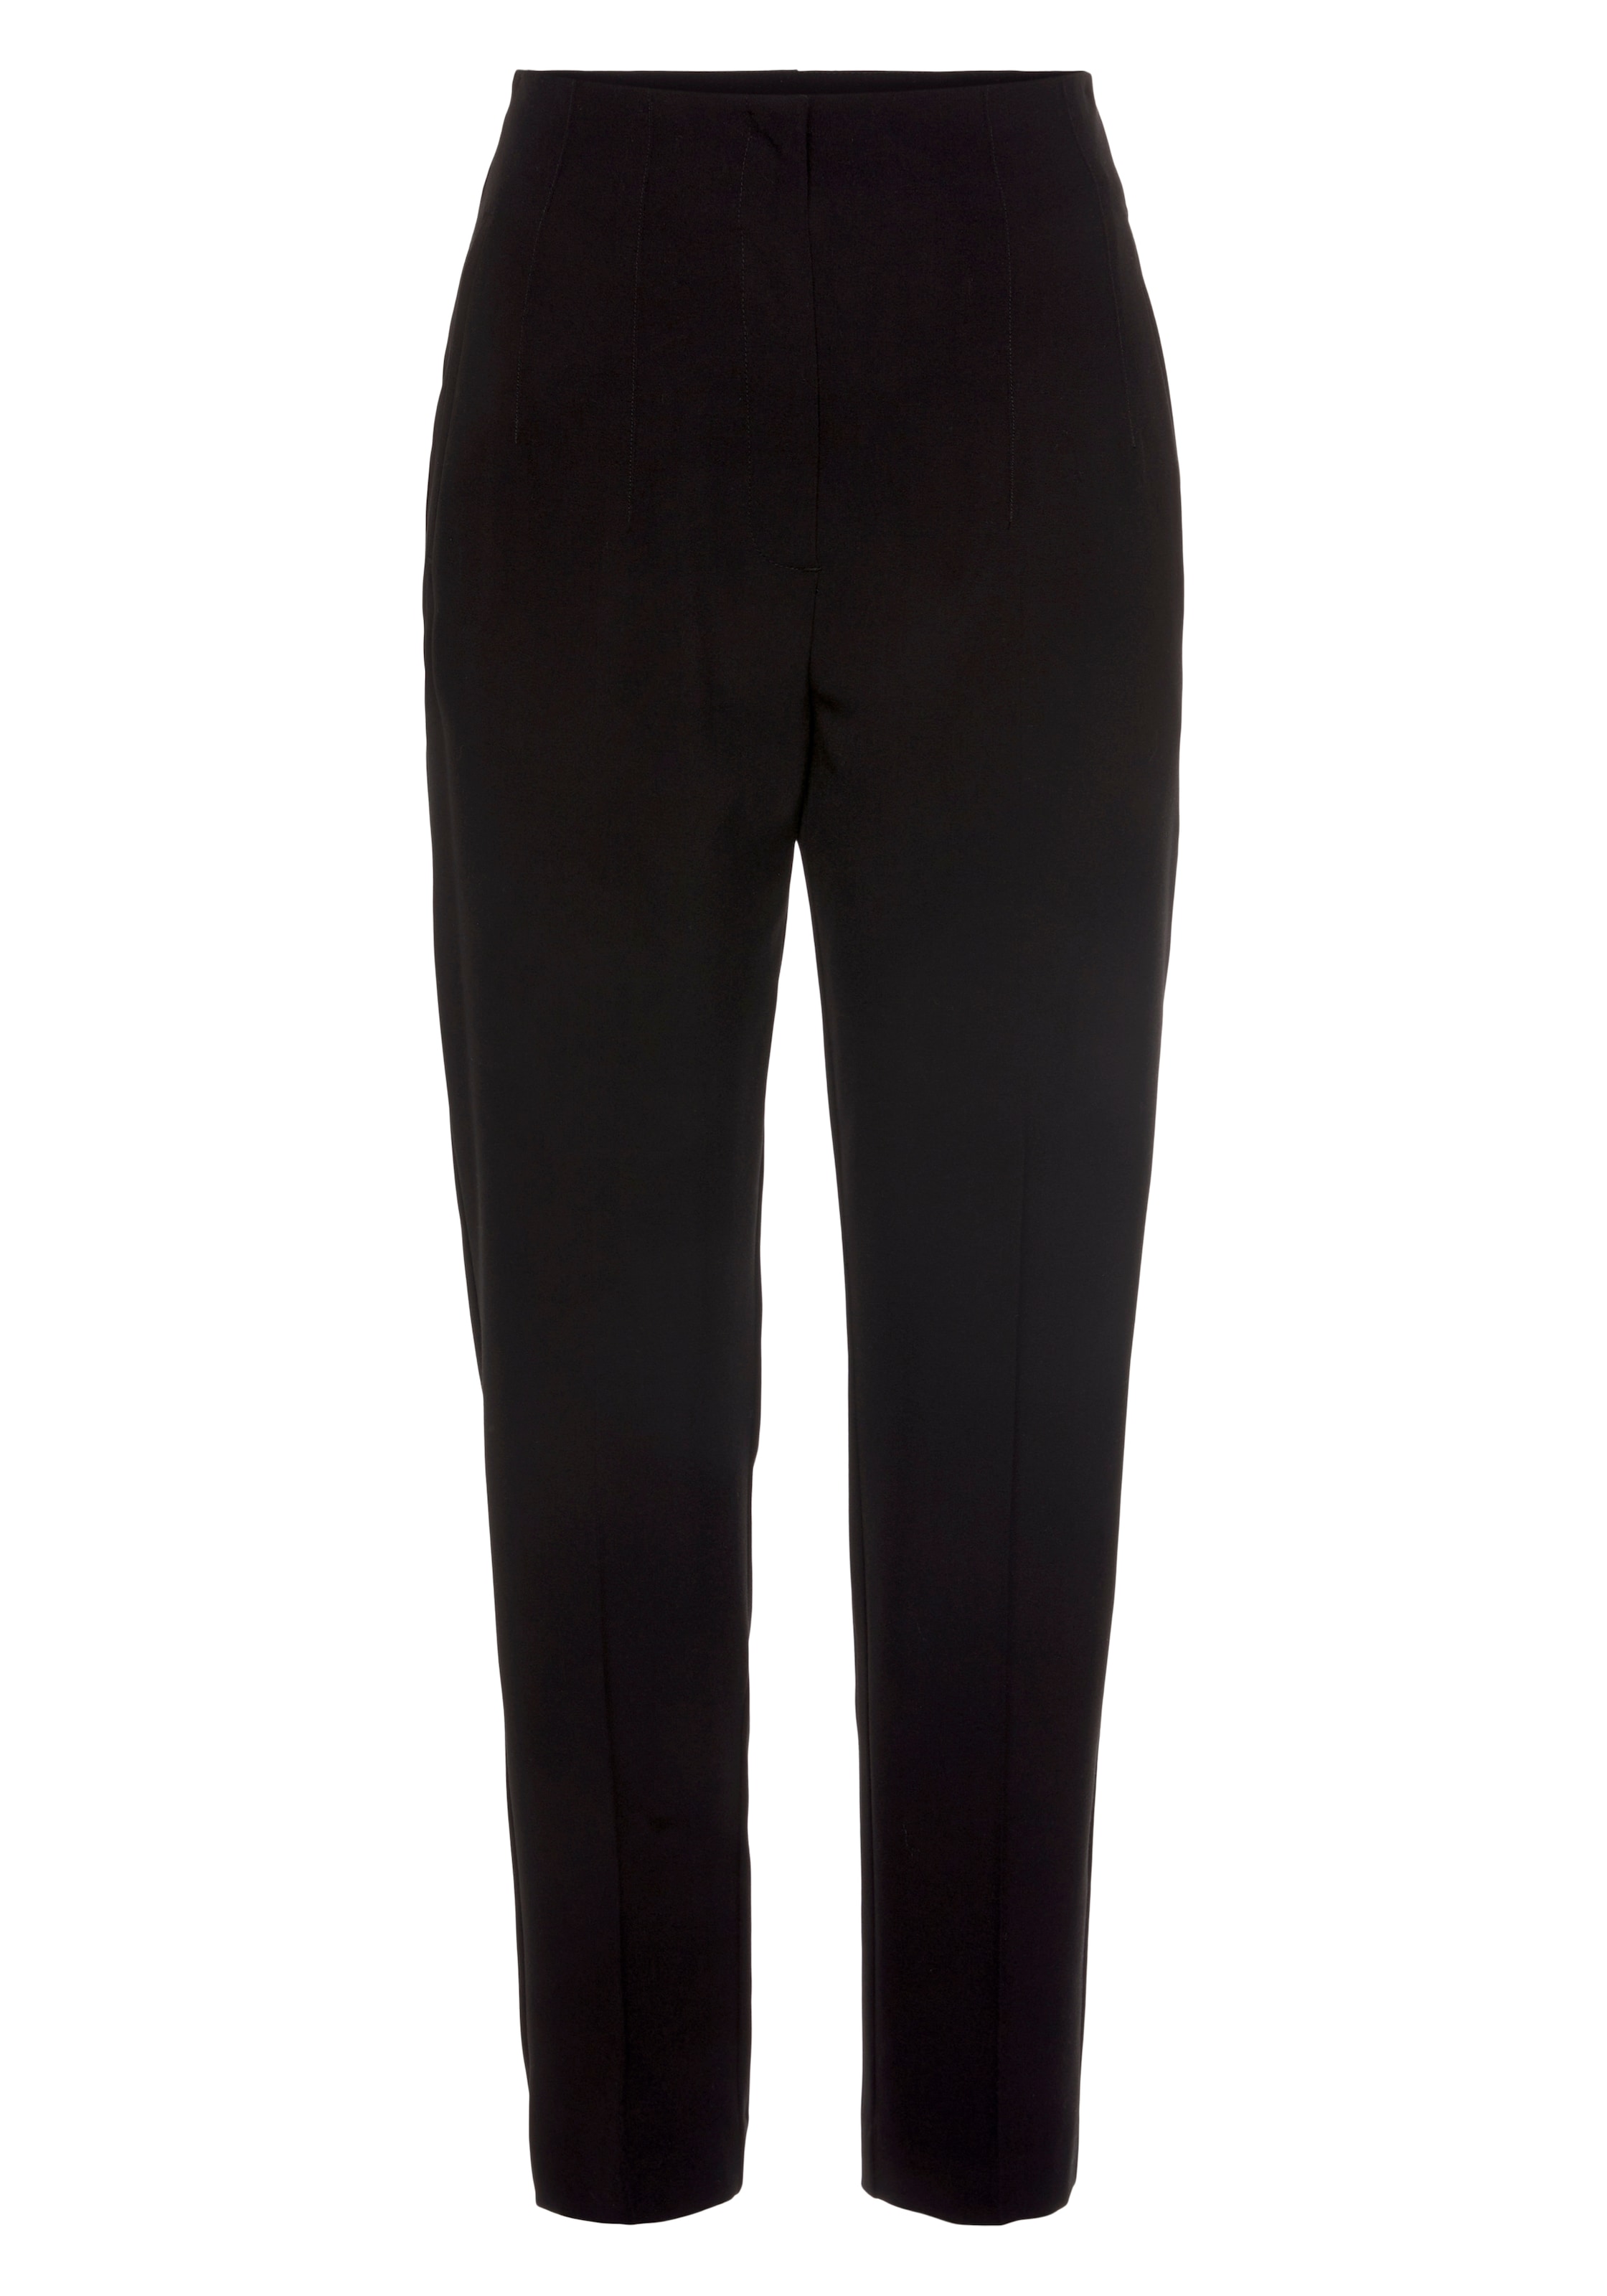 LASCANA Anzughose, mit schmalem Bein und Bügelfalte, elegante Stoffhose, Business-Look